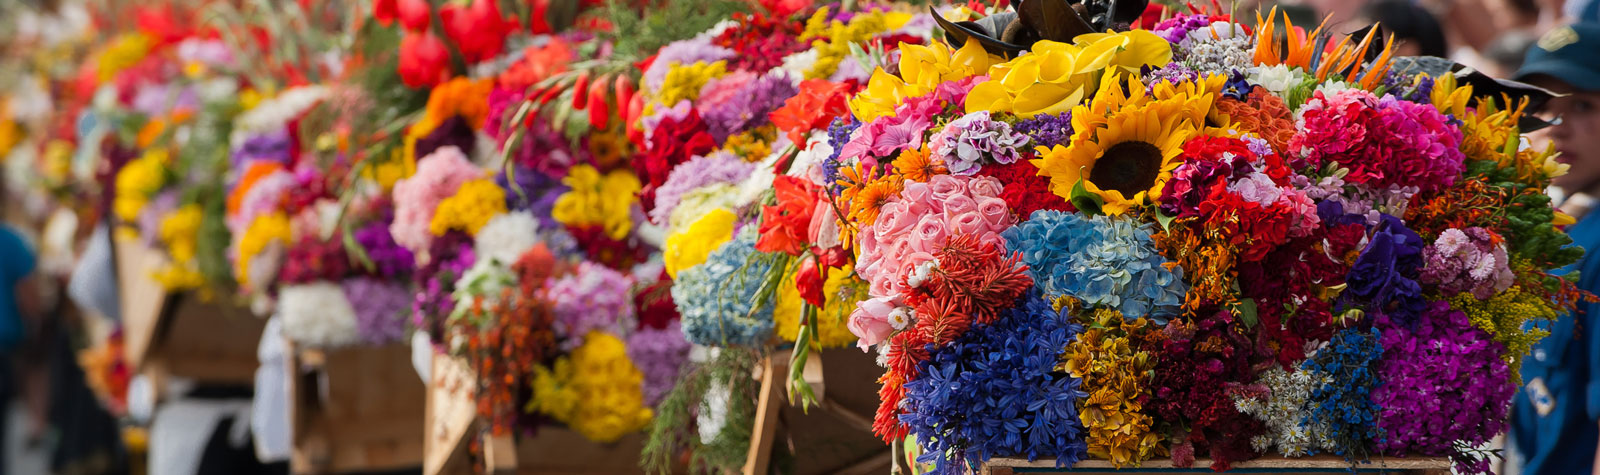 Fiestas florales alrededor del mundo